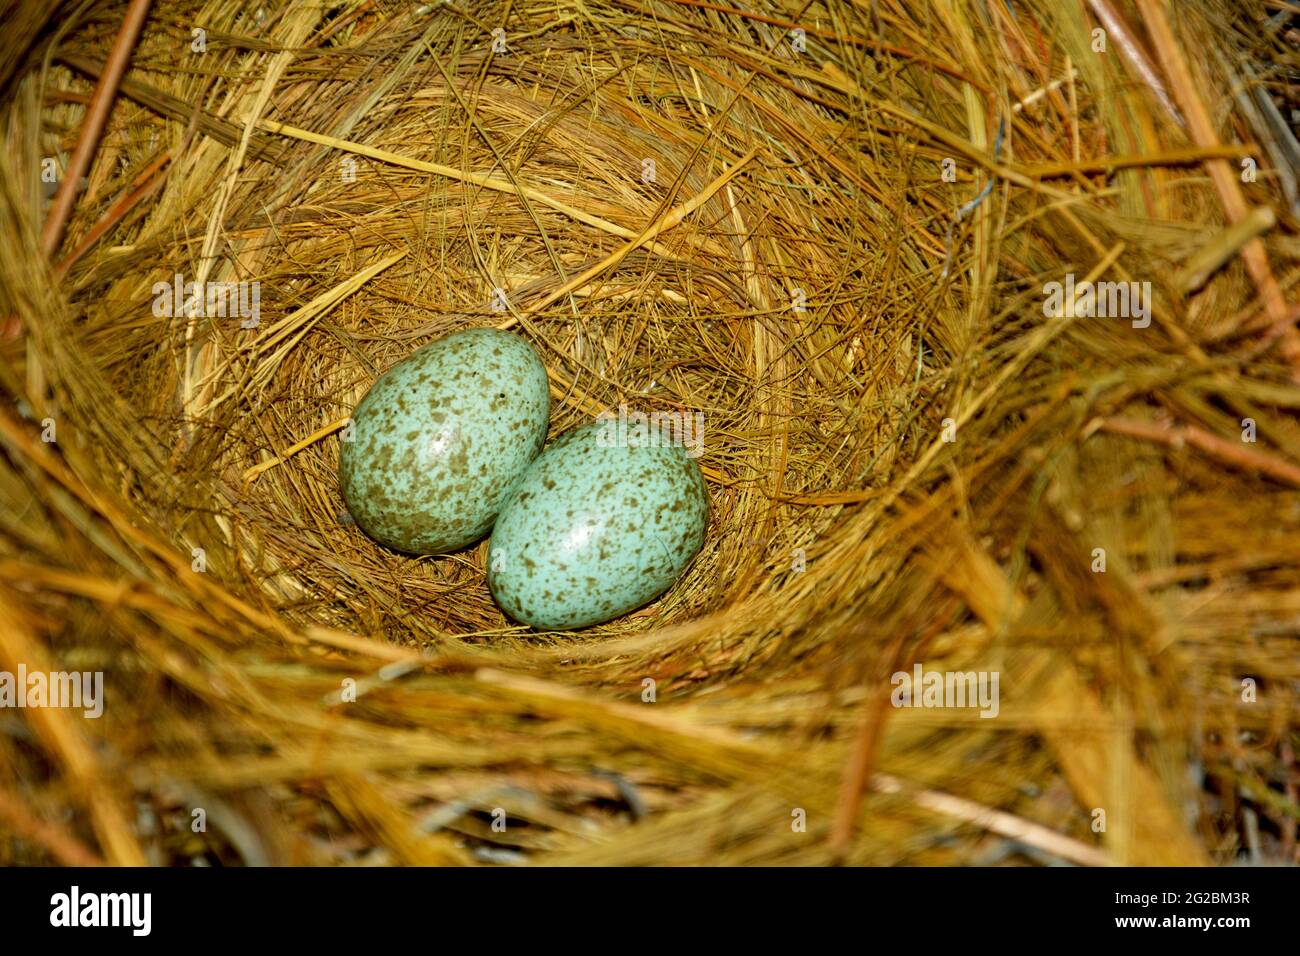 Nahaufnahme von zwei kleinen Kräheneiern in einem Vogelnest aus ReisHeu, Stroh, selektiver Fokussierung Stockfoto